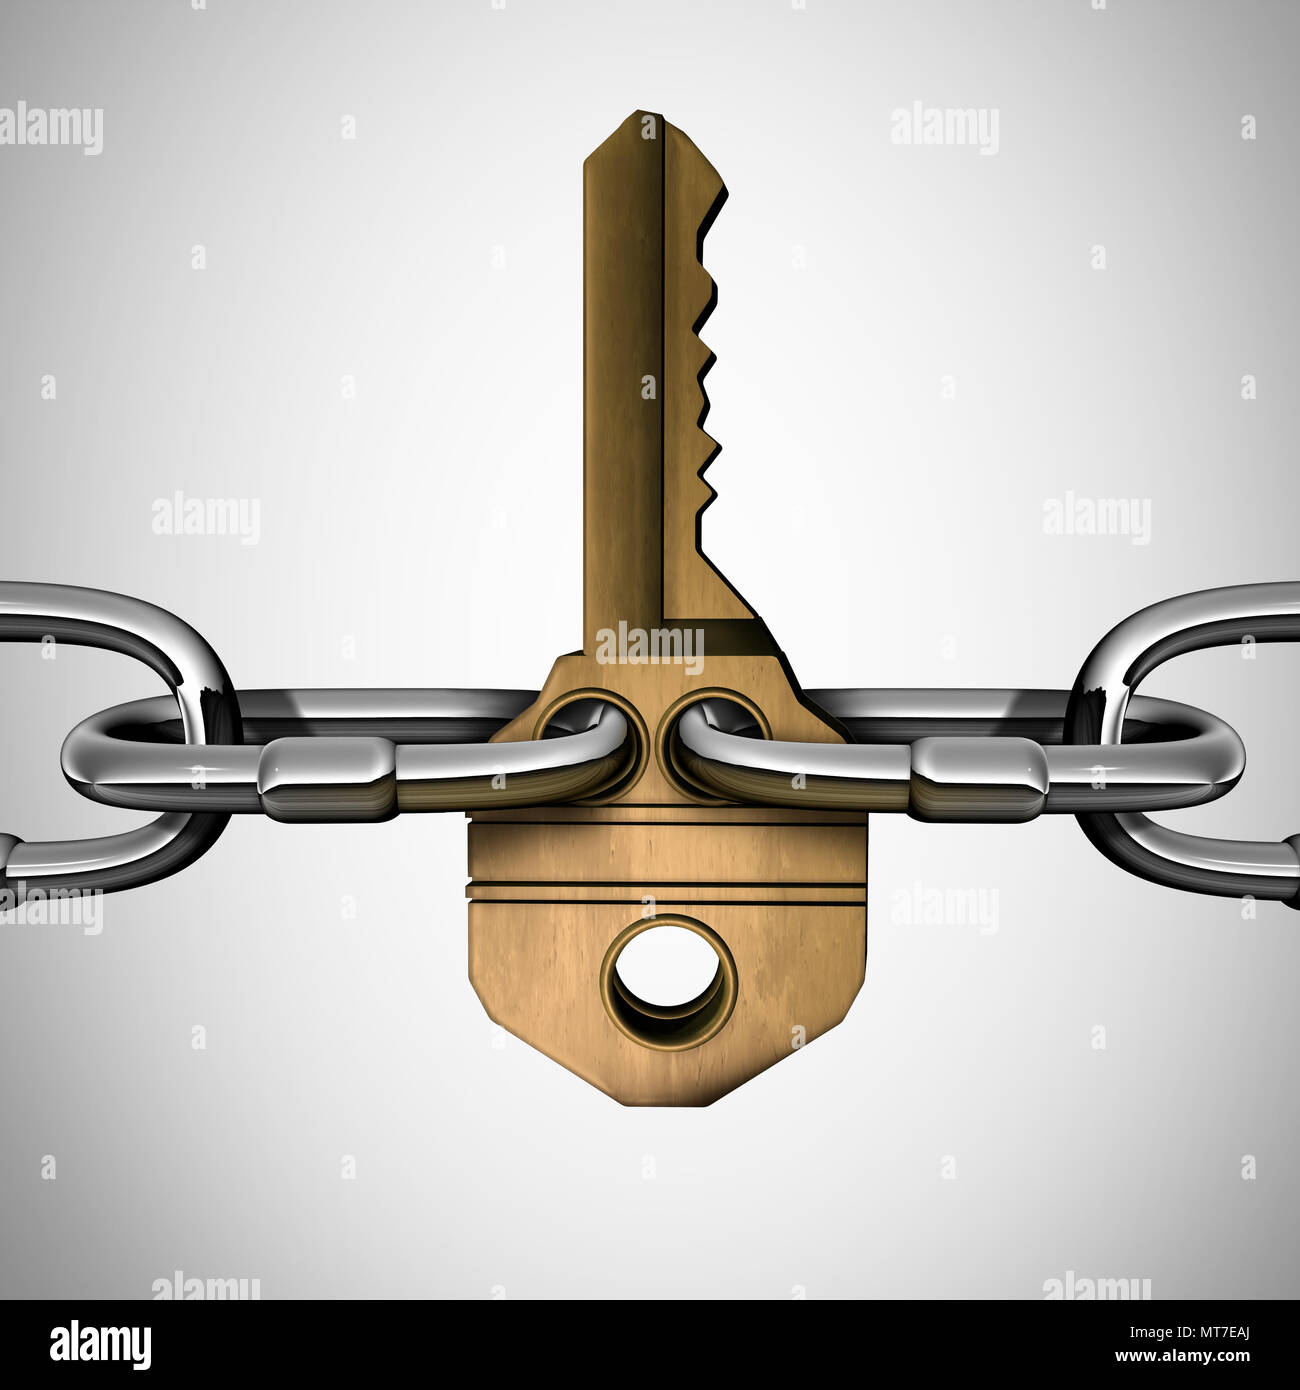 Key Chain Konzept erfolg Idee als Links mit einem riesigen goldenen Messing Sicherheit Objekt als ein starkes Netzwerk angeschlossen. Stockfoto